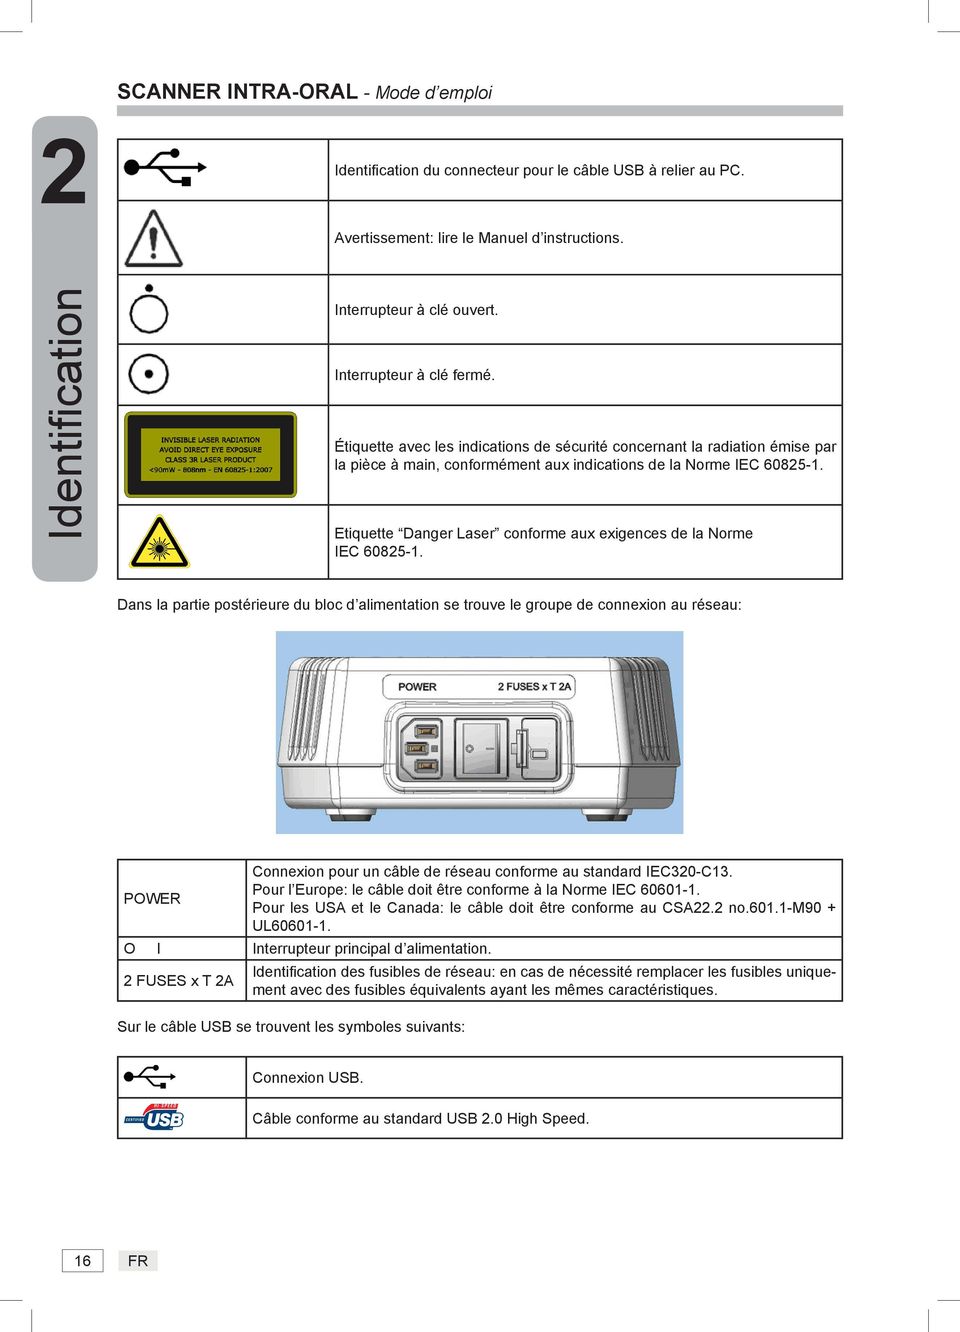 Etiquette Danger Laser conforme aux exigences de la Norme IEC 60825-1.